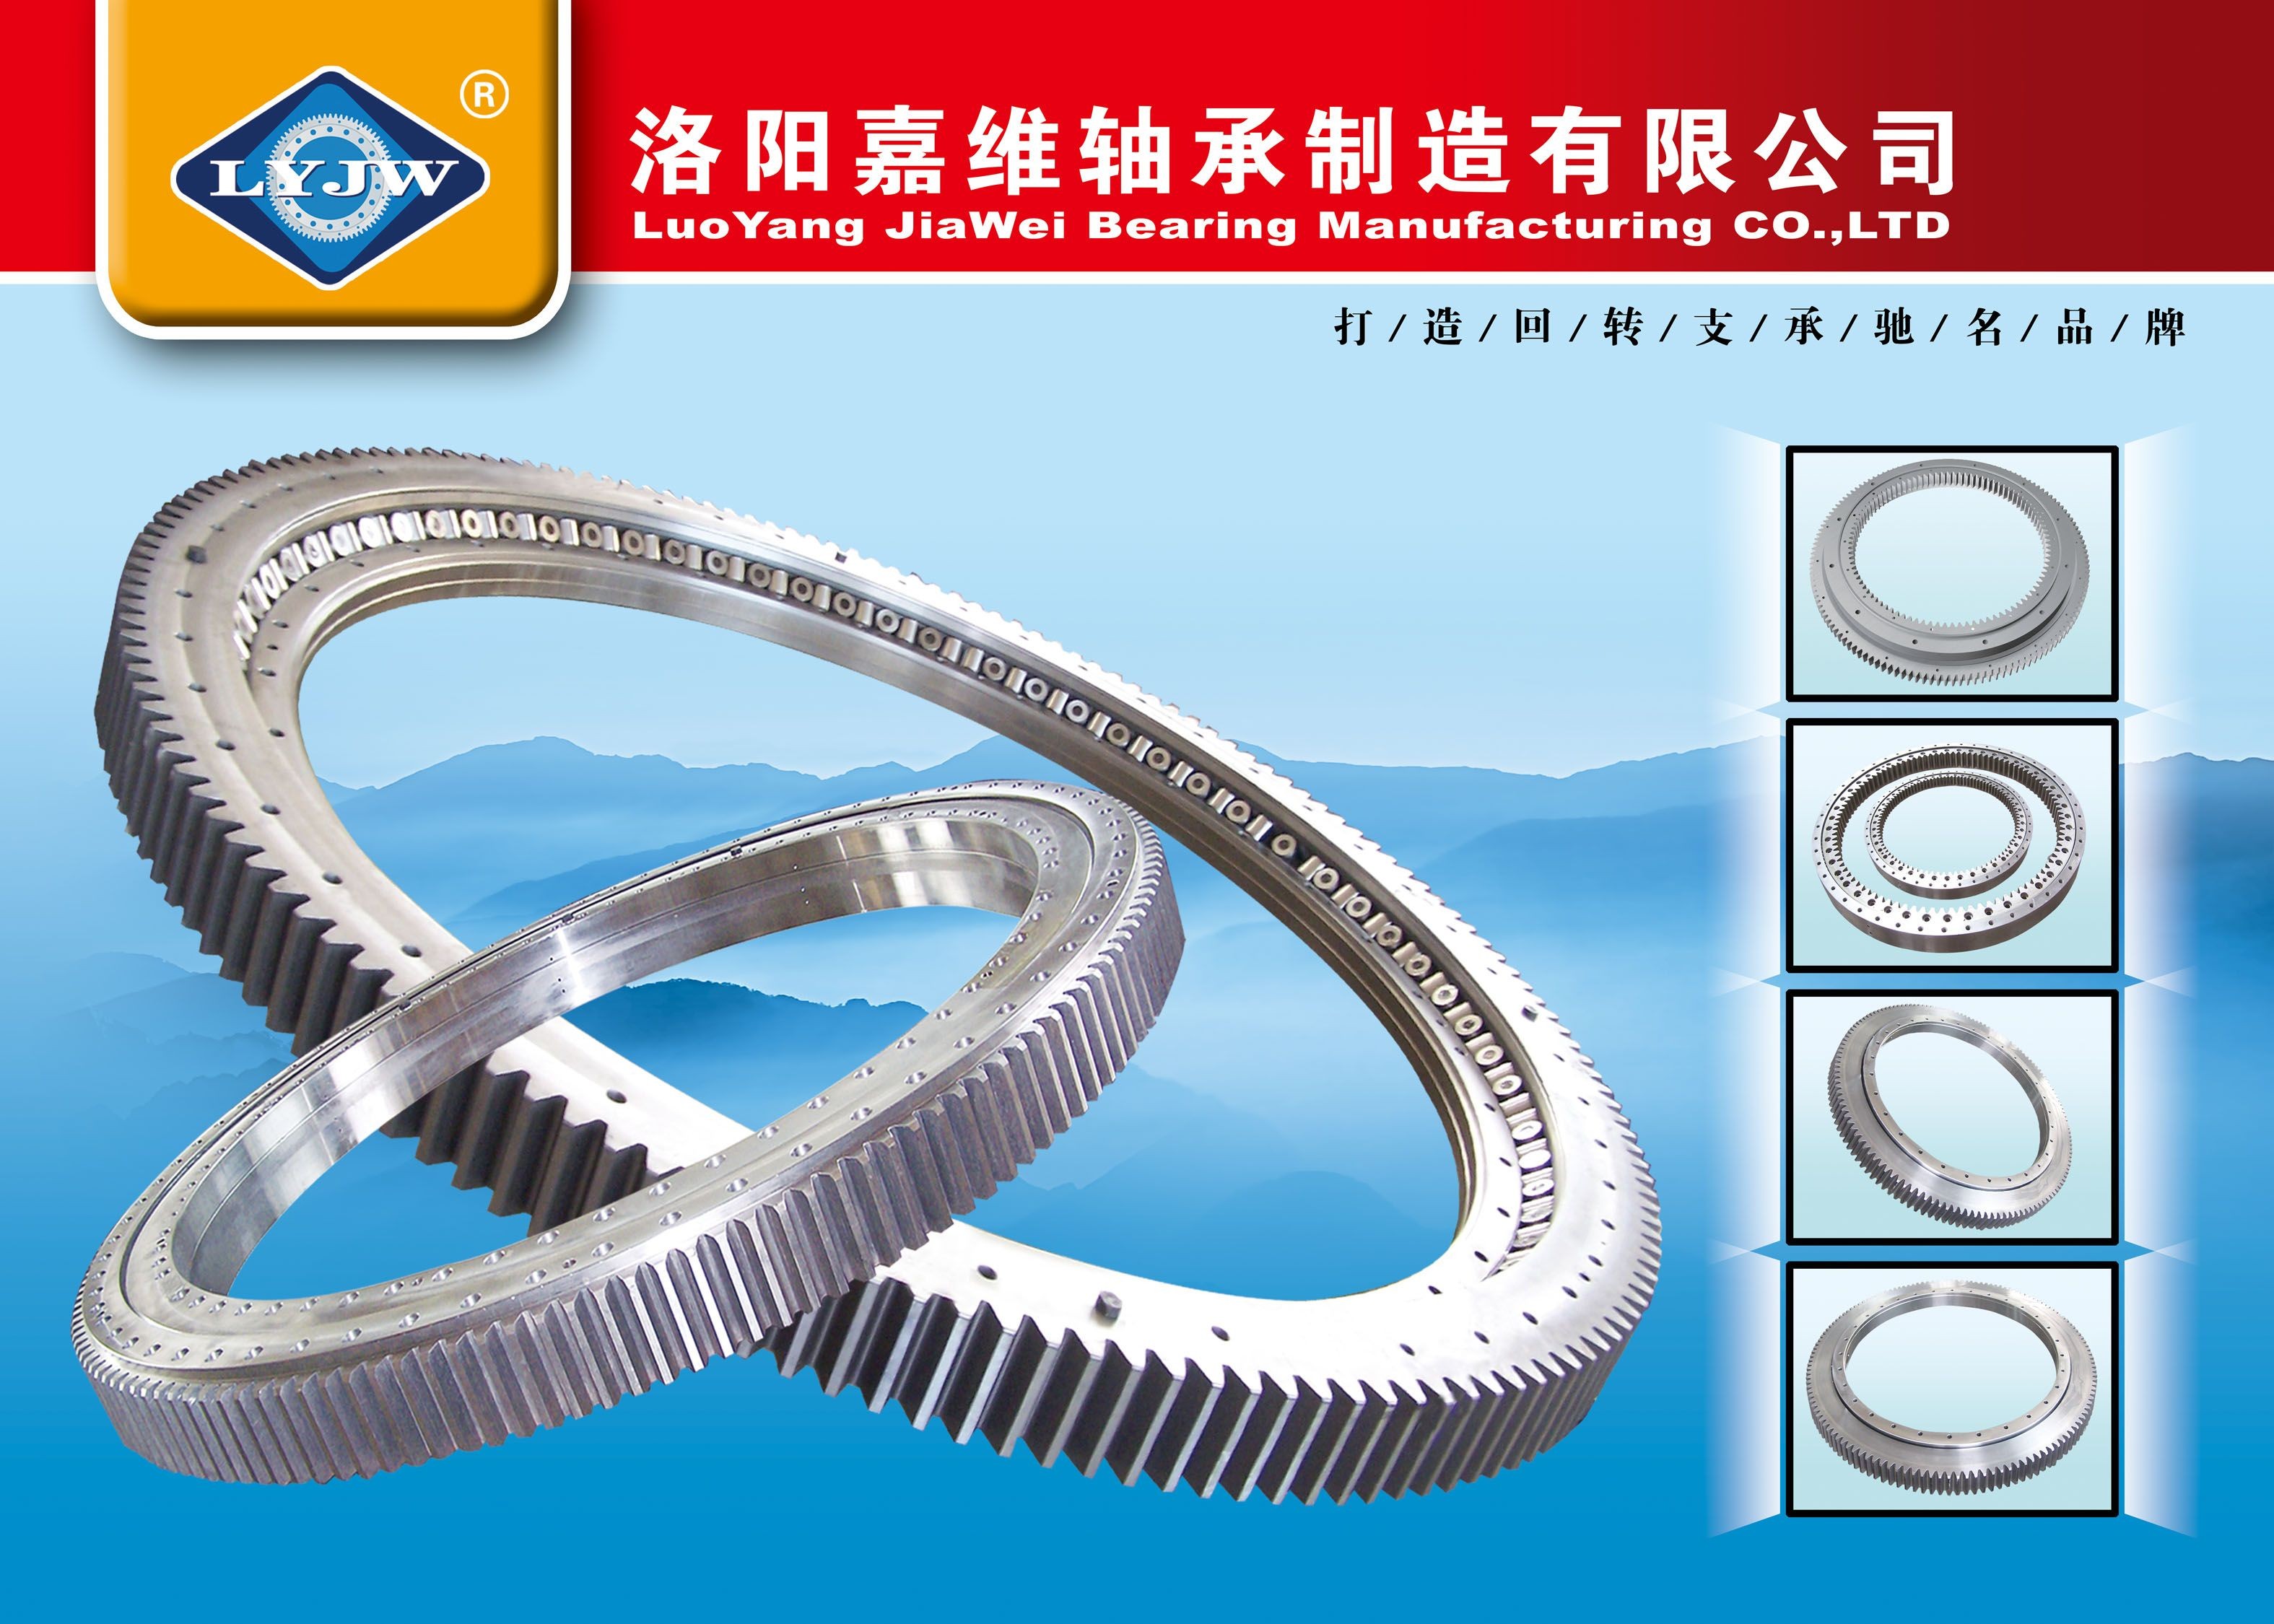 luoyang jiawei bearing manufacturing co.,ltd